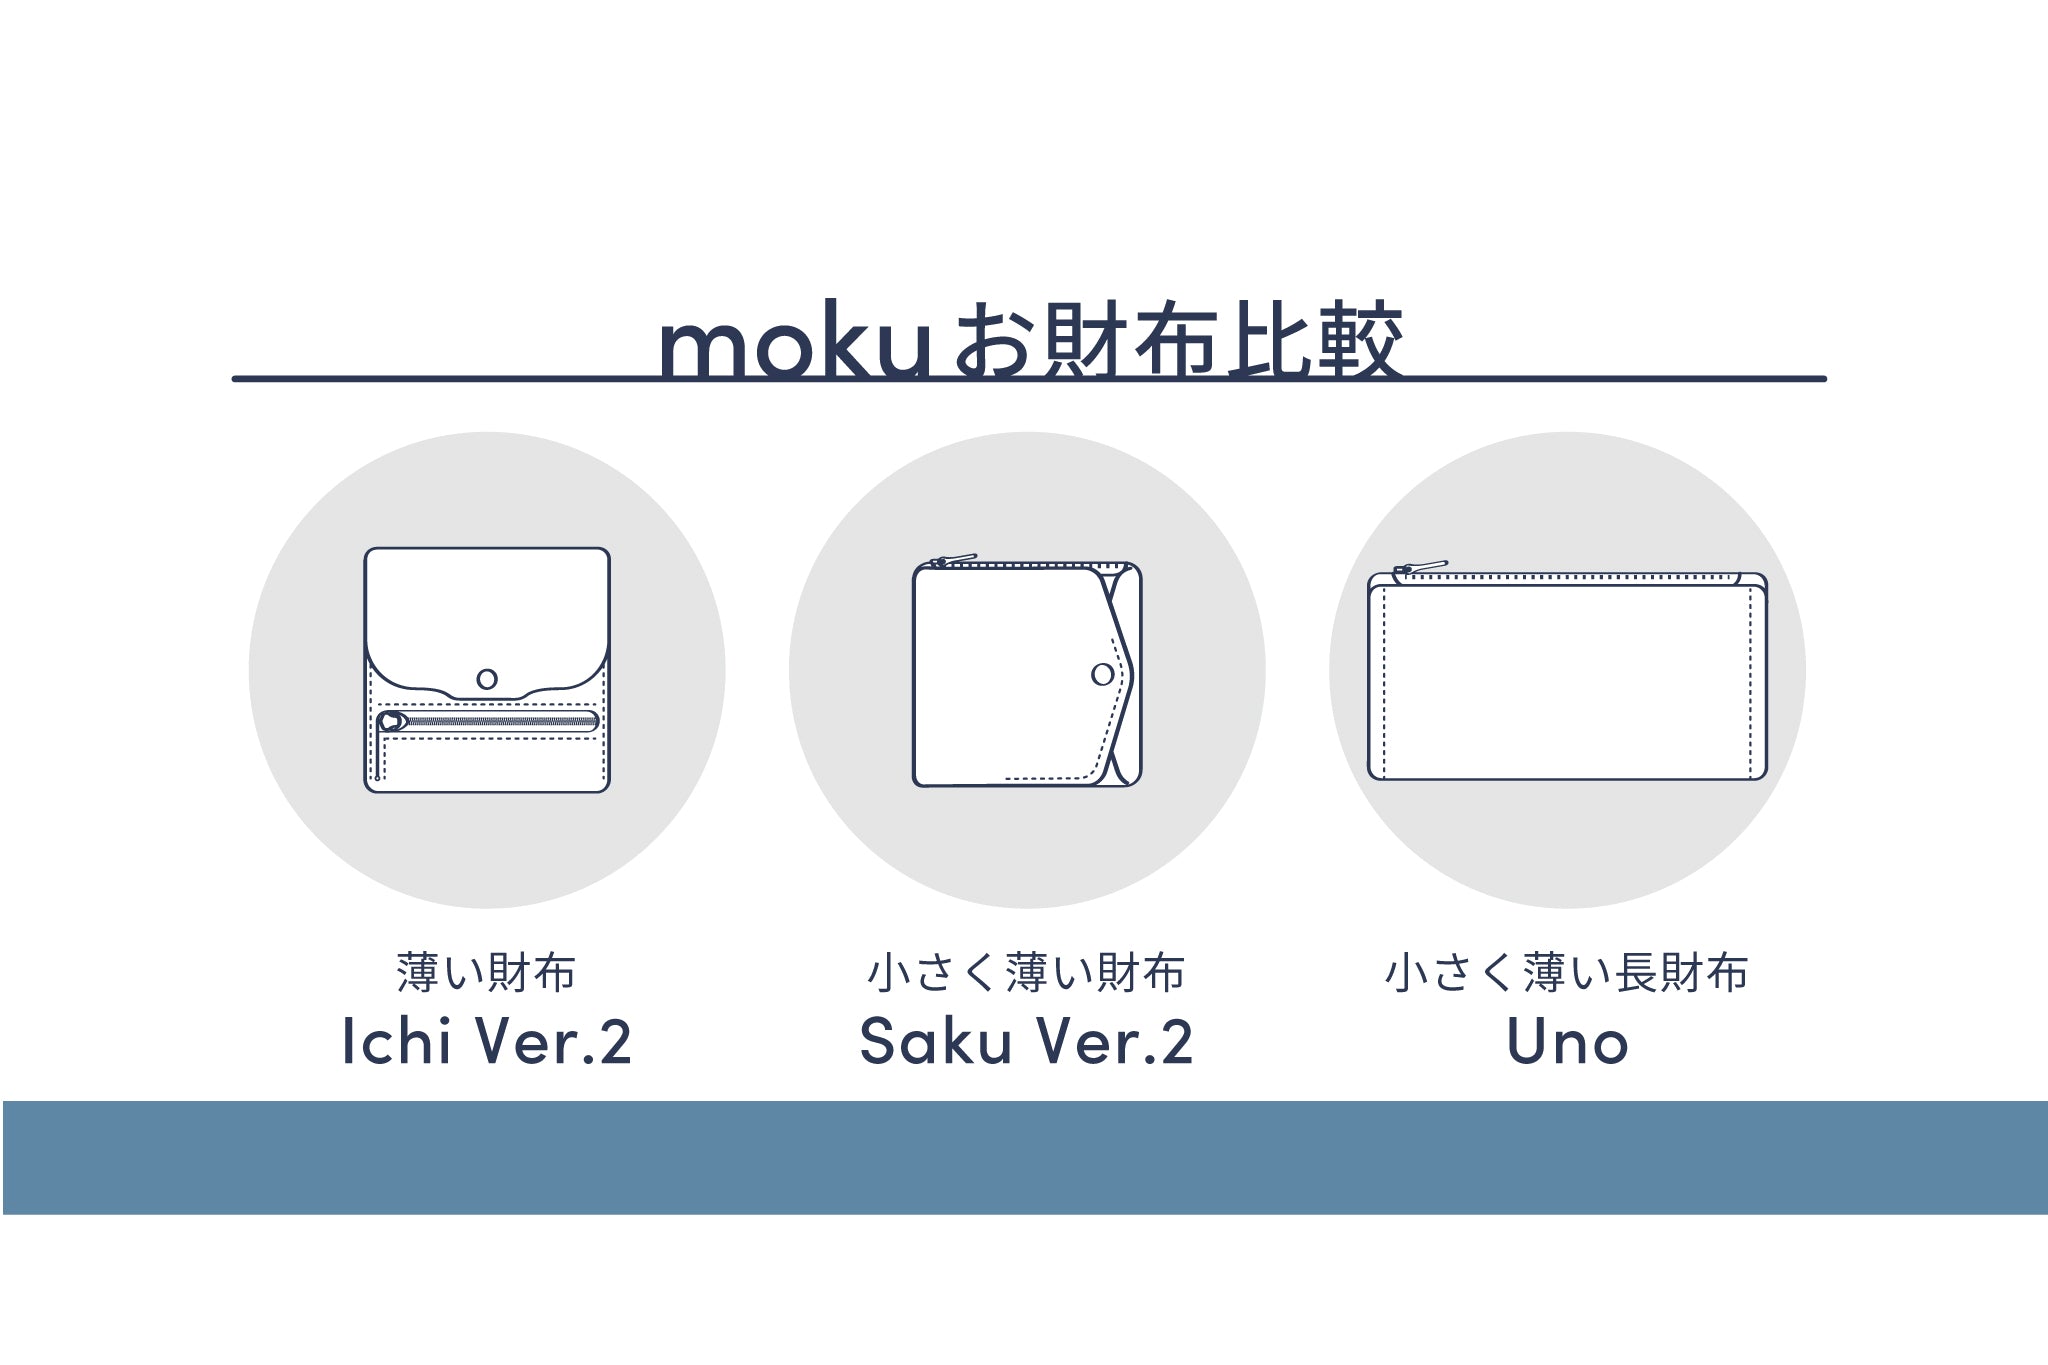 薄い財布シリーズの比較まとめ – moku | 薄い財布などの革小物ブランド